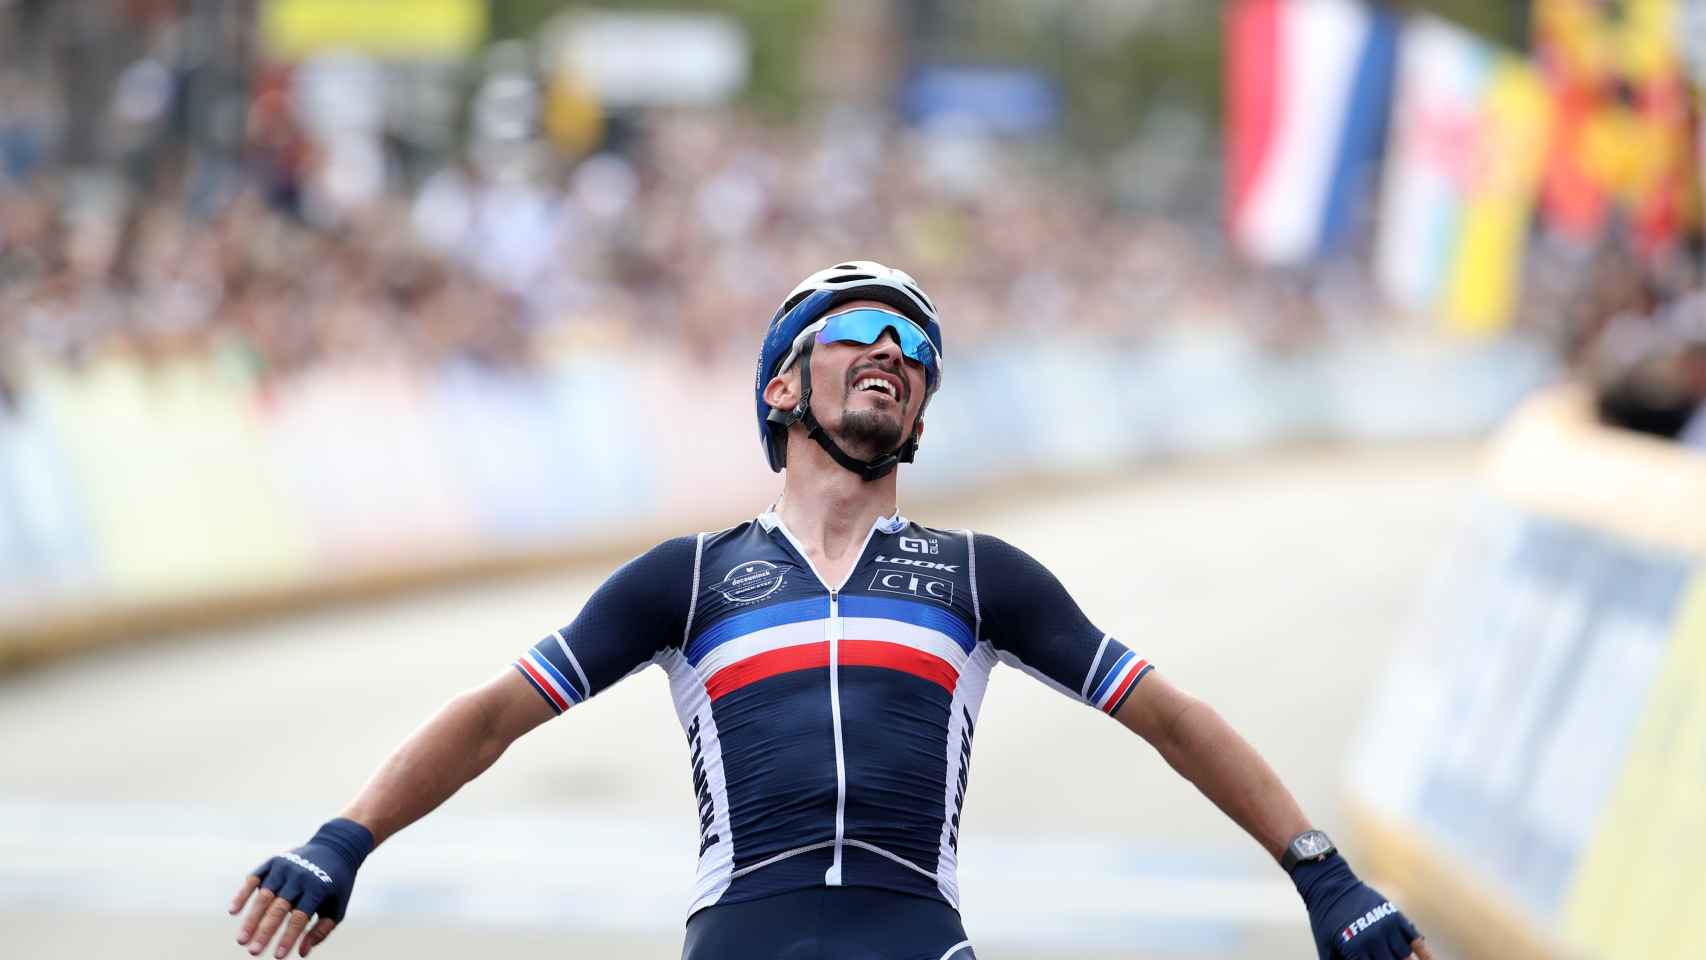 Julian Alaphilippe celebra su triunfo en el Mundial de ciclismo de Flandes de 2021